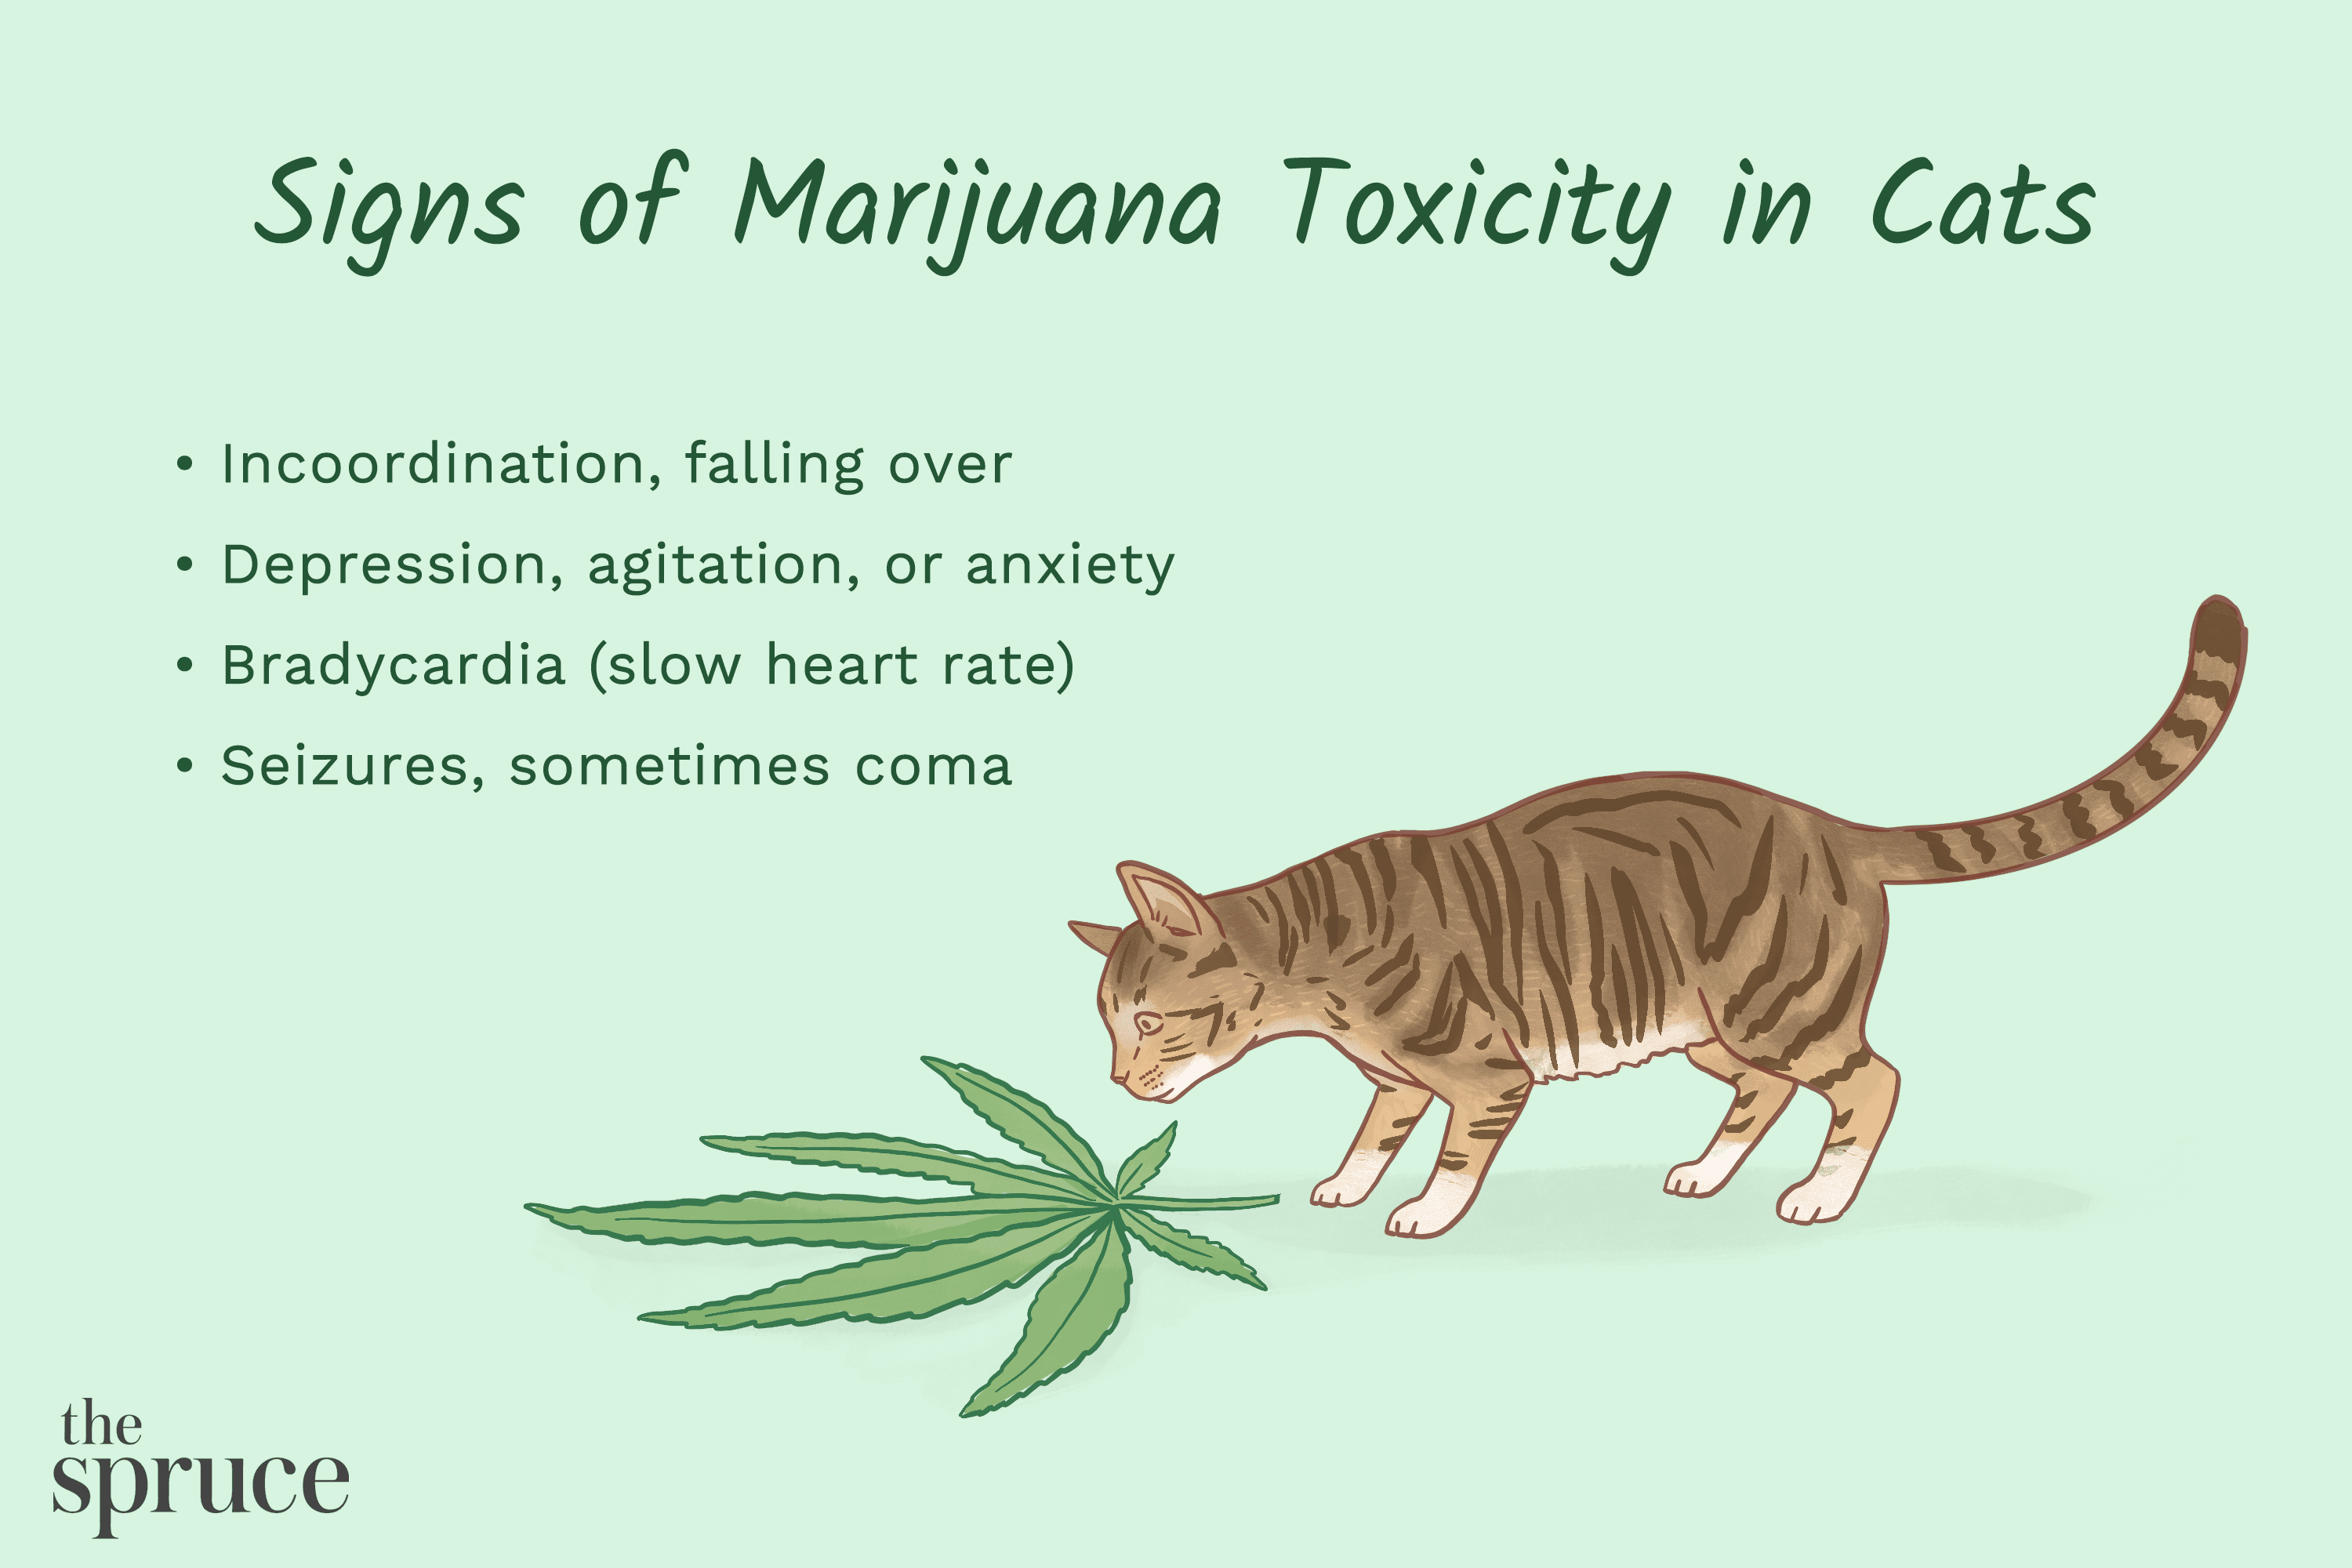 Tossicità da marijuana nei gatti